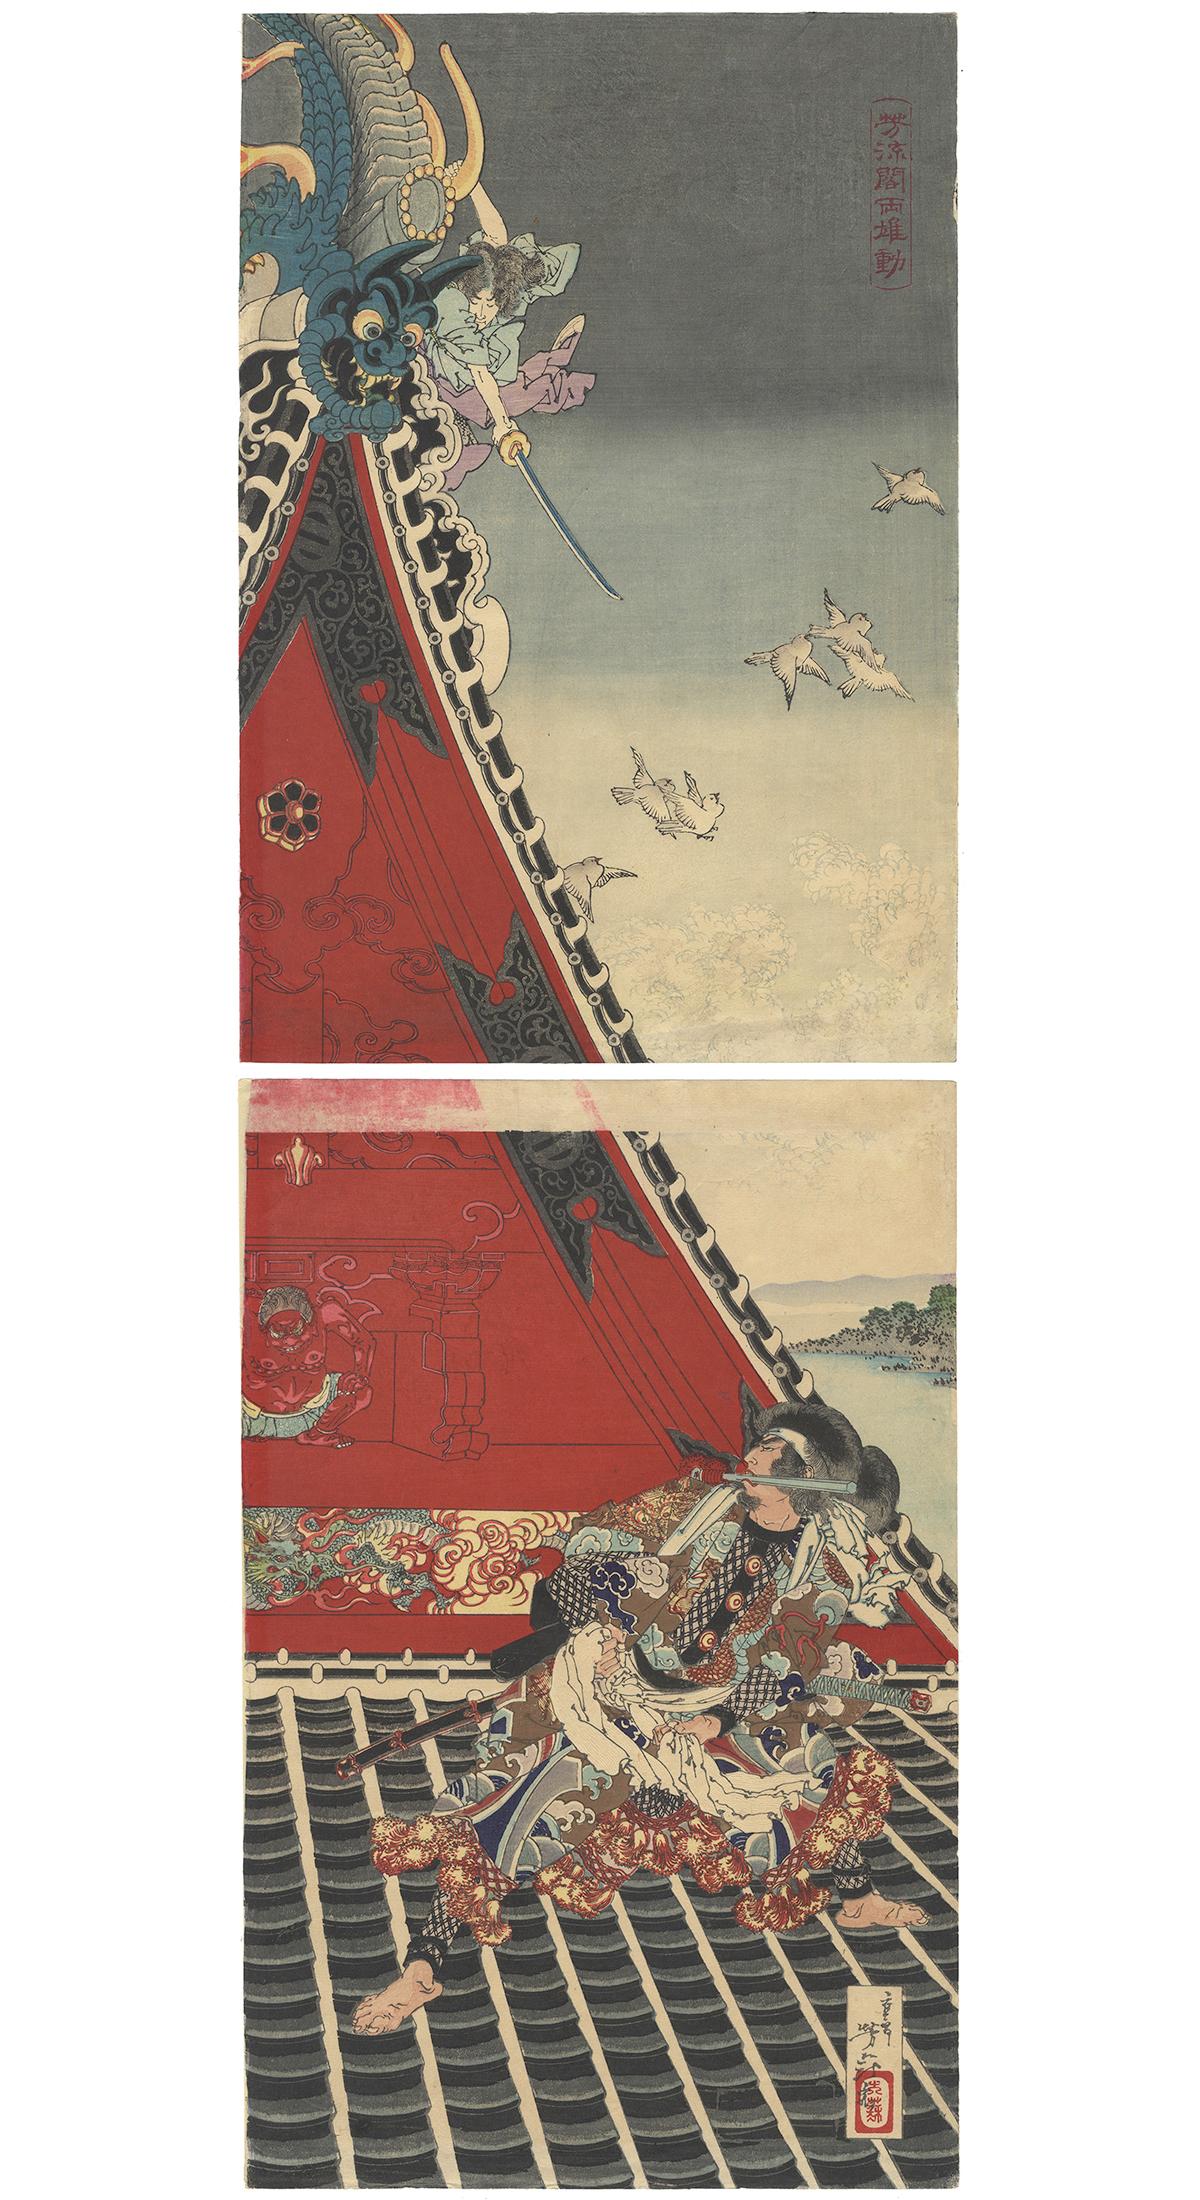 Tsukioka Yoshitoshi Figurative Print - Yoshitoshi Tsukioka, 19th Century, Japanese Woodblock Print, Ukiyo-e, Kakemono-e